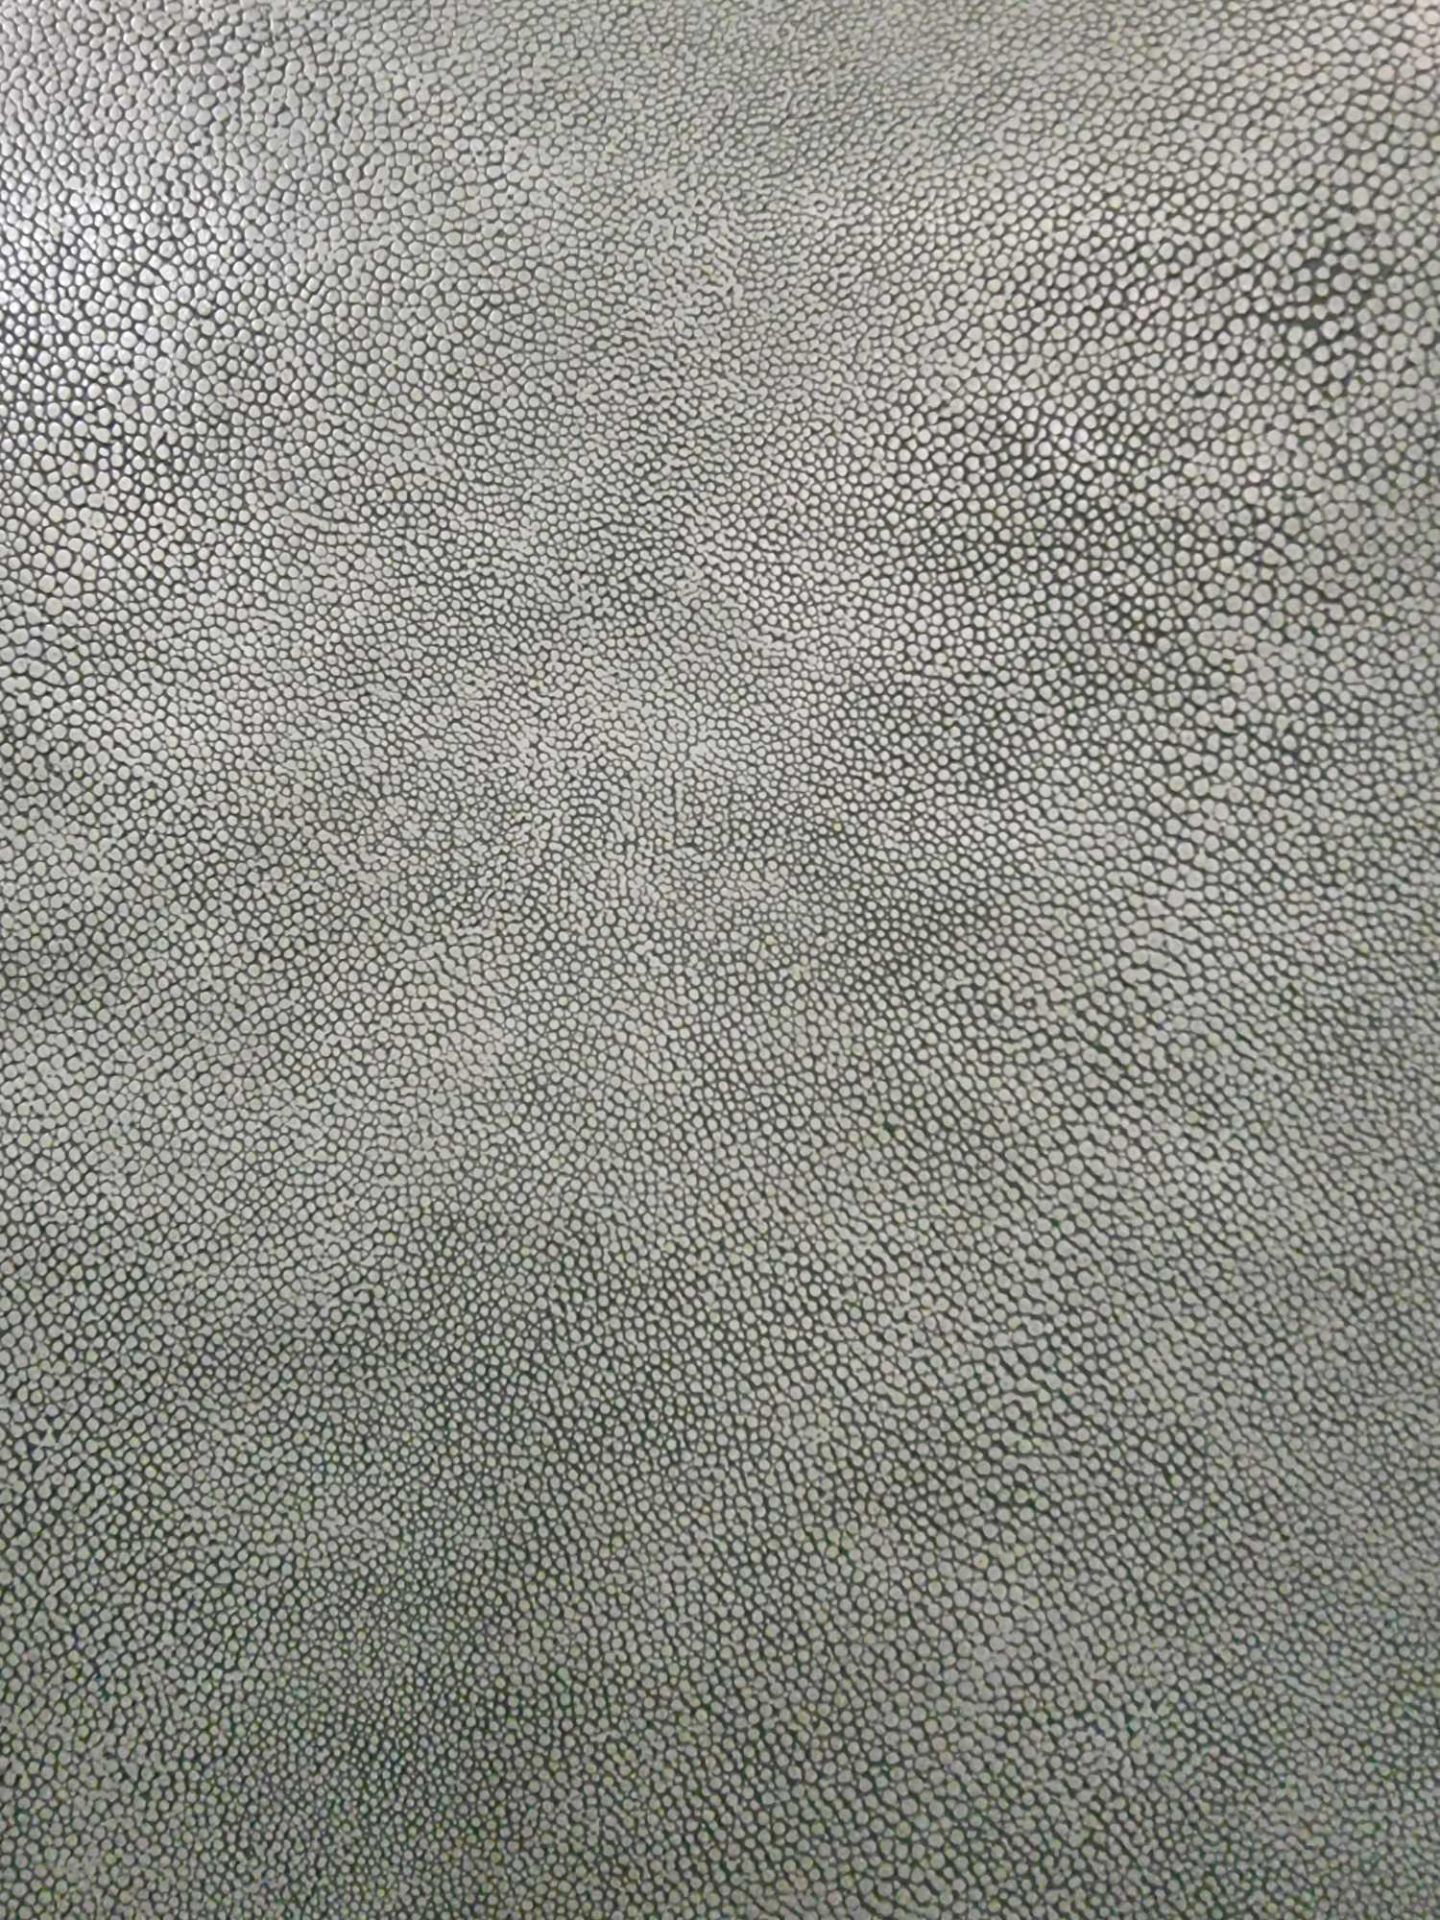 Sage Leather Hide approximately 3 78M2 2 1 x 1 8cm ( Hide No,215) - Bild 2 aus 3